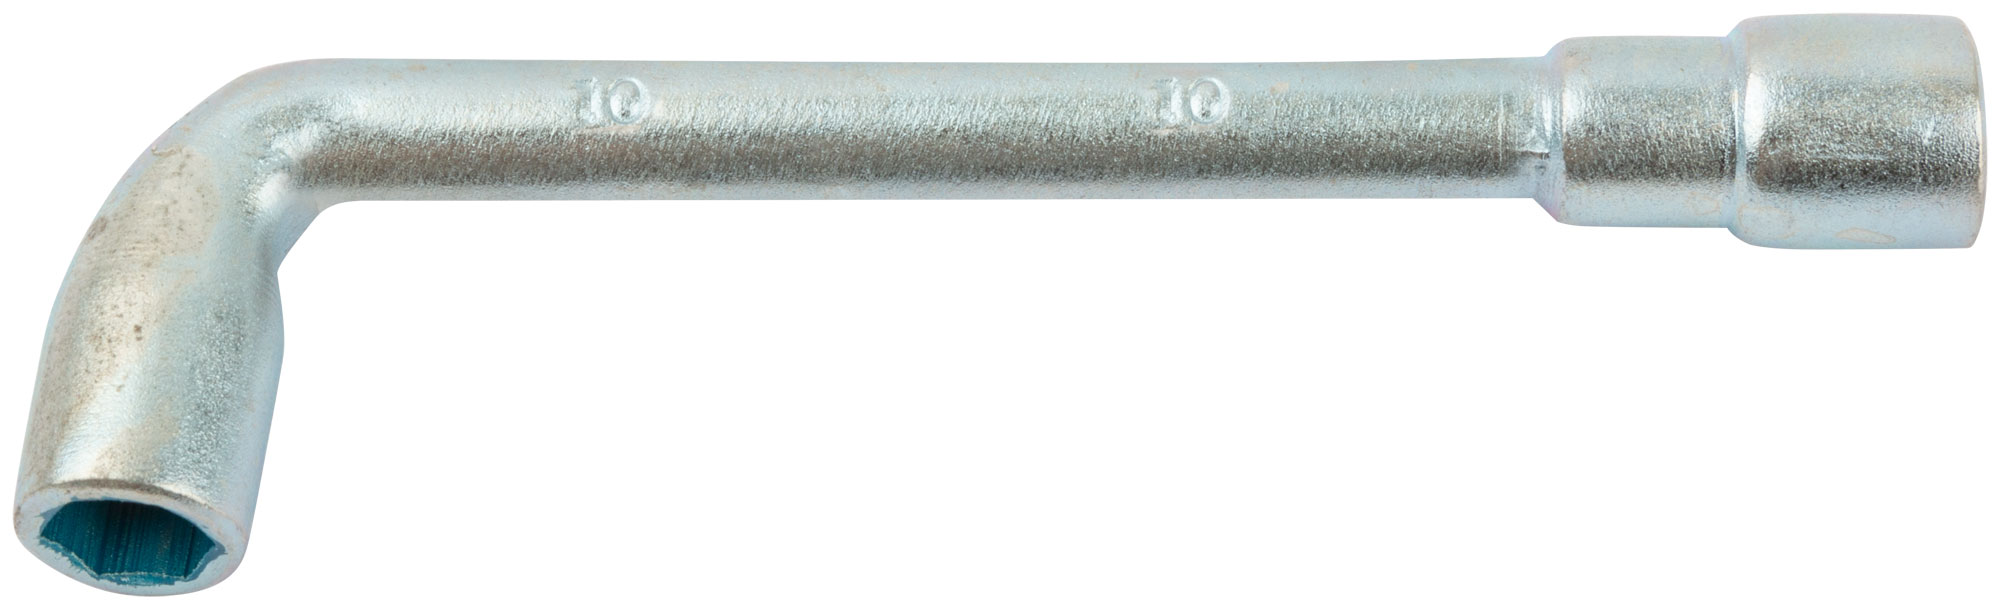 Ключ торцевой L-образный 10 мм. FIT 63010 стеллаж открытый торцевой лондон